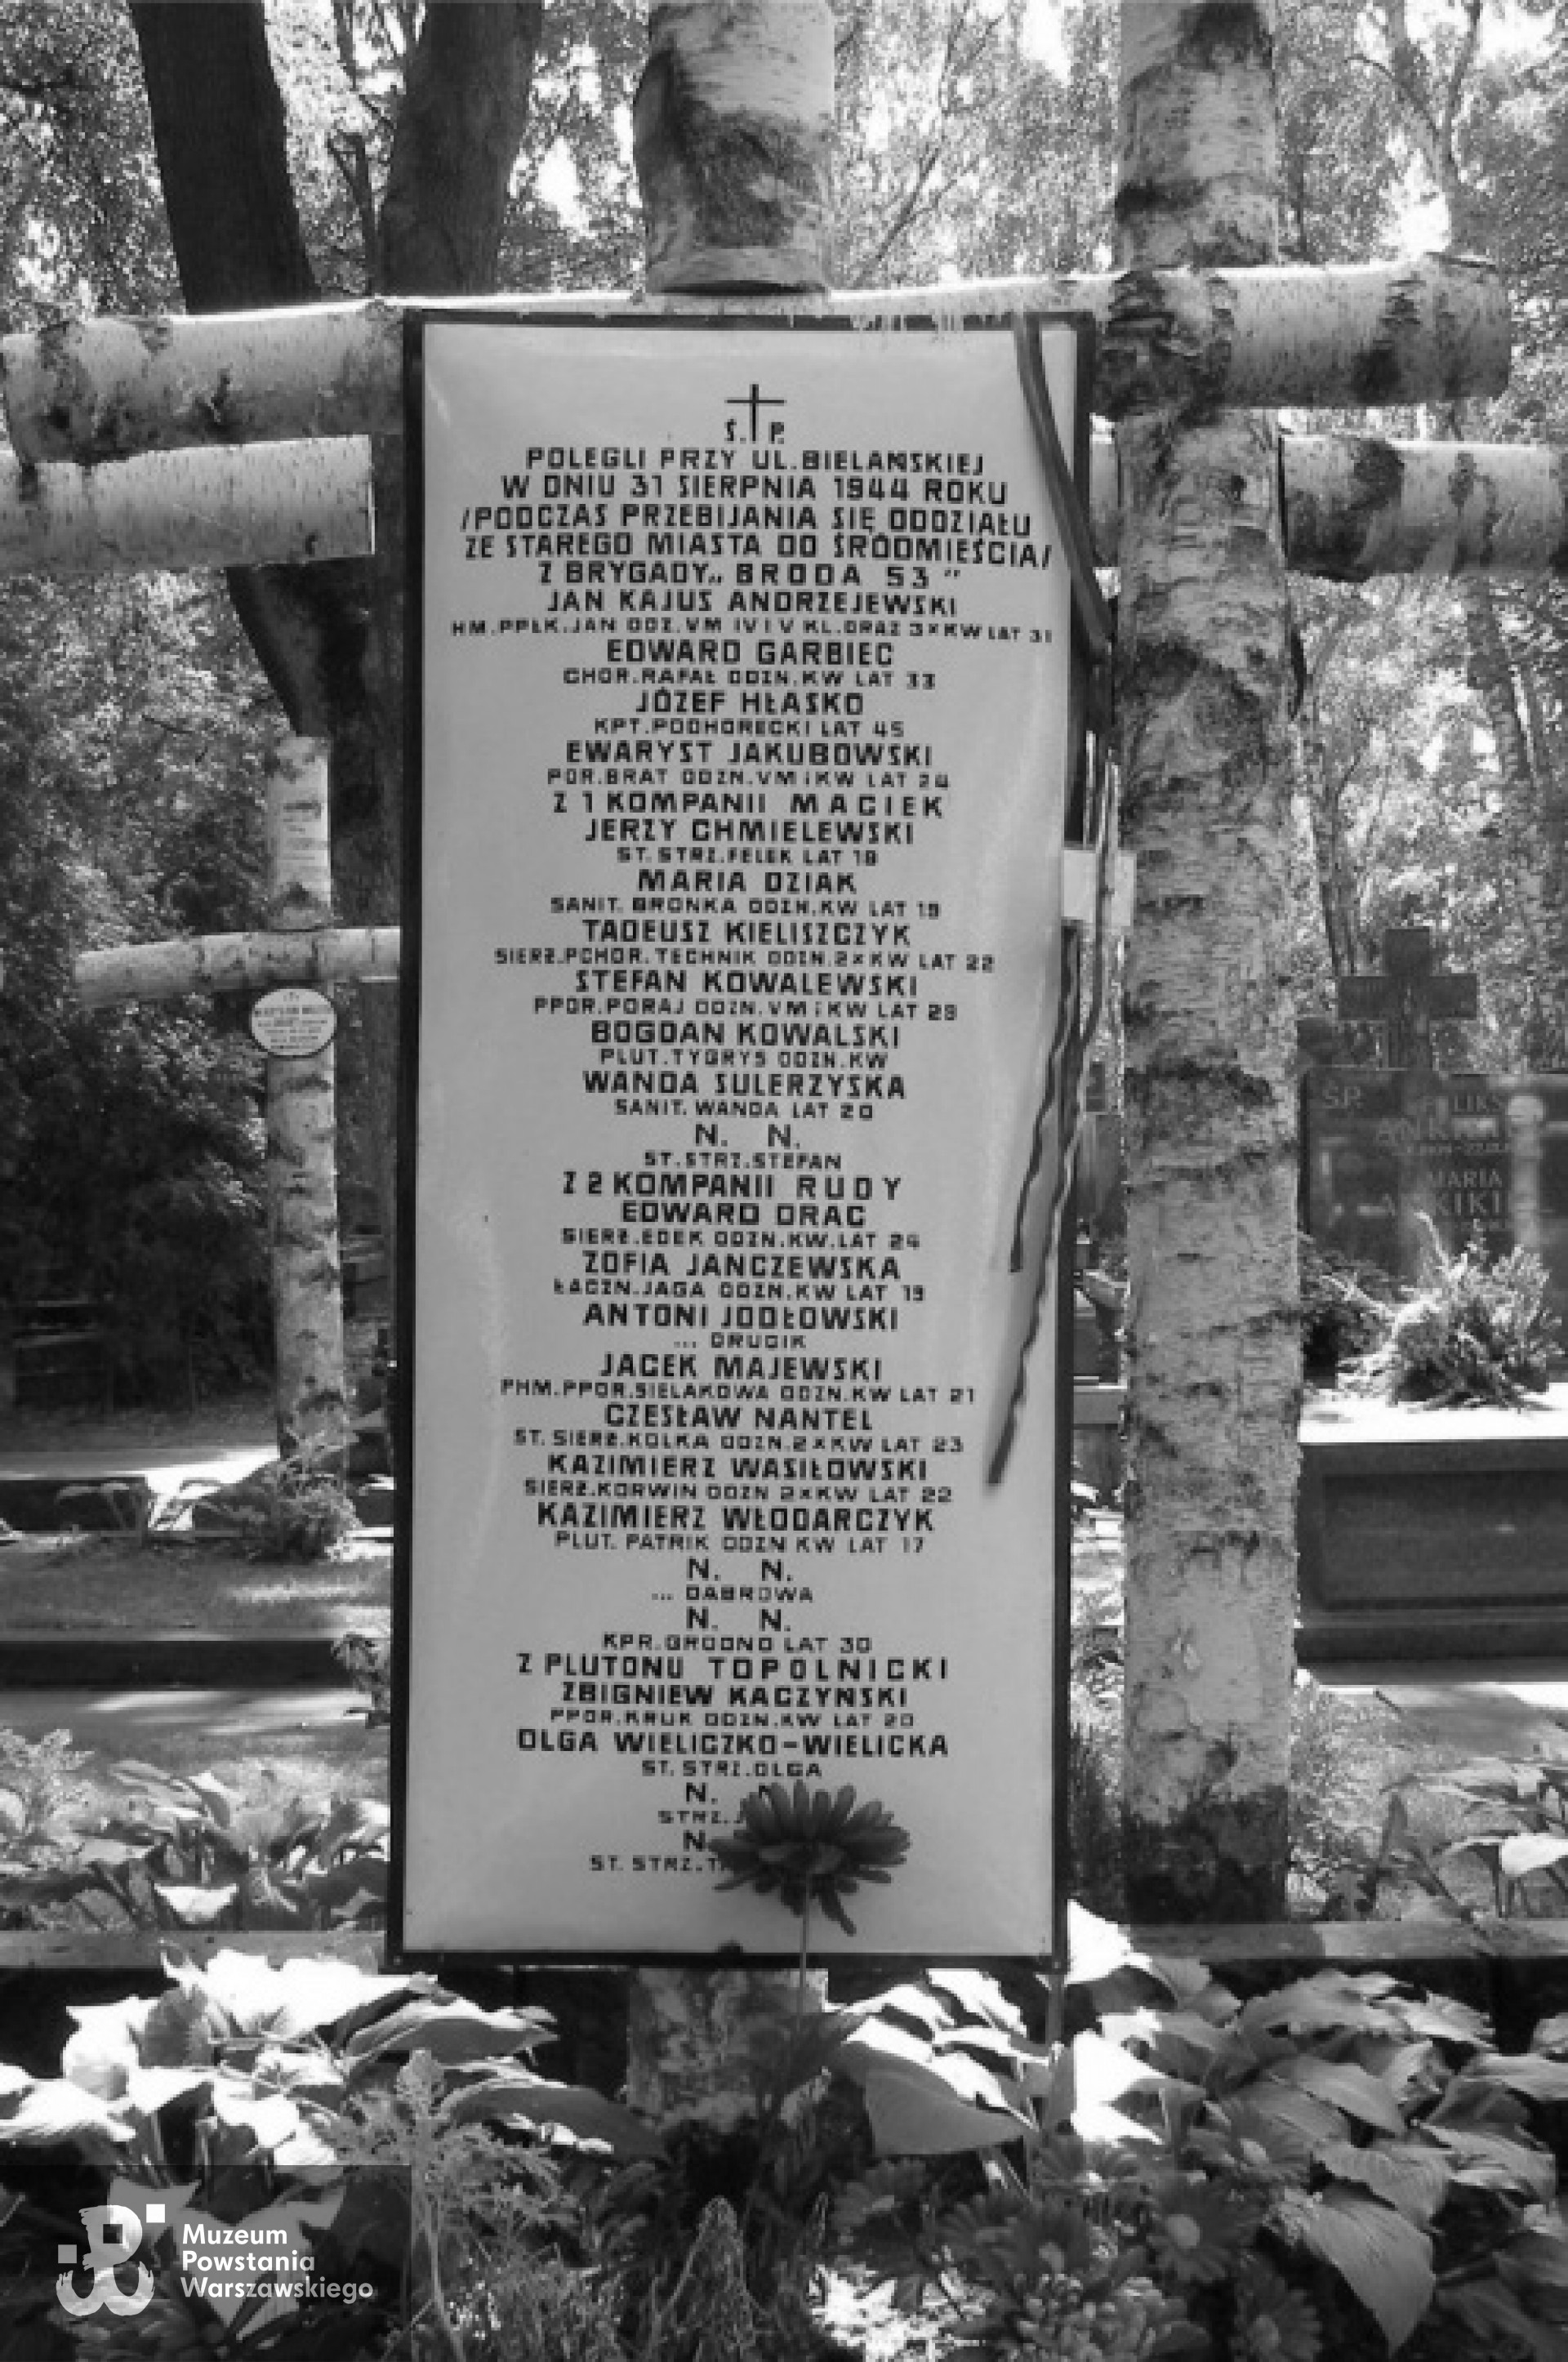 Cmentarz Wojskowy na Powązkach, kwatera żołnierzy batalionu "Zośka" - A 20, rząd 5, grób 13 (mogiła zbiorowa żołnierzy poległych w rejonie Bielańskiej podczas przebicia oddziałów do Śródmieścia, 31-08-1944 r.)